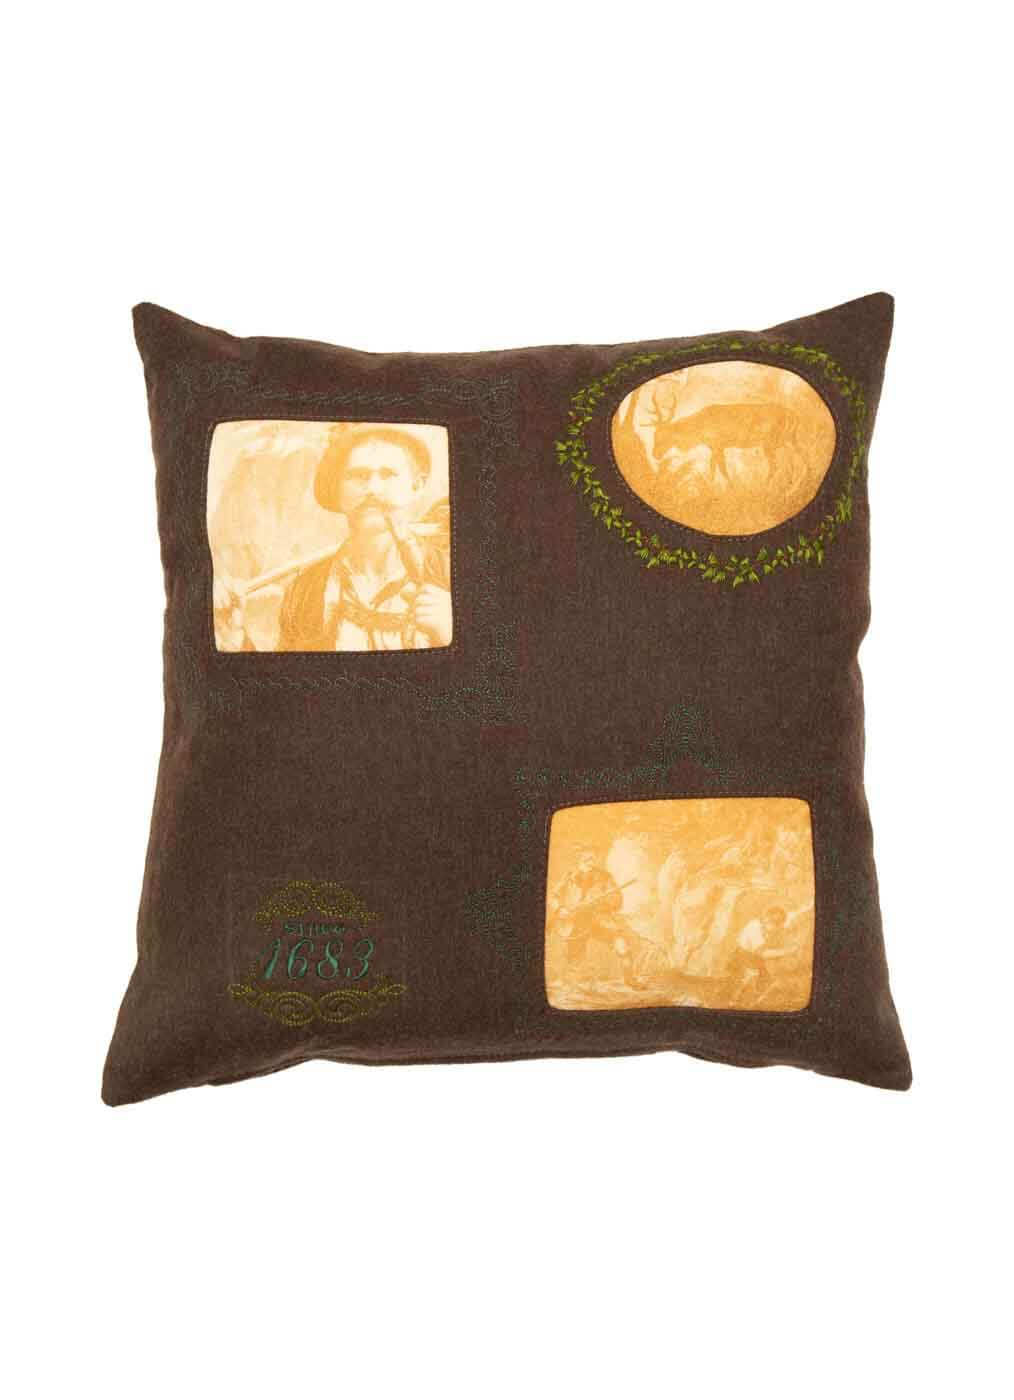 Loden Pillow “Wilderer M”, brown